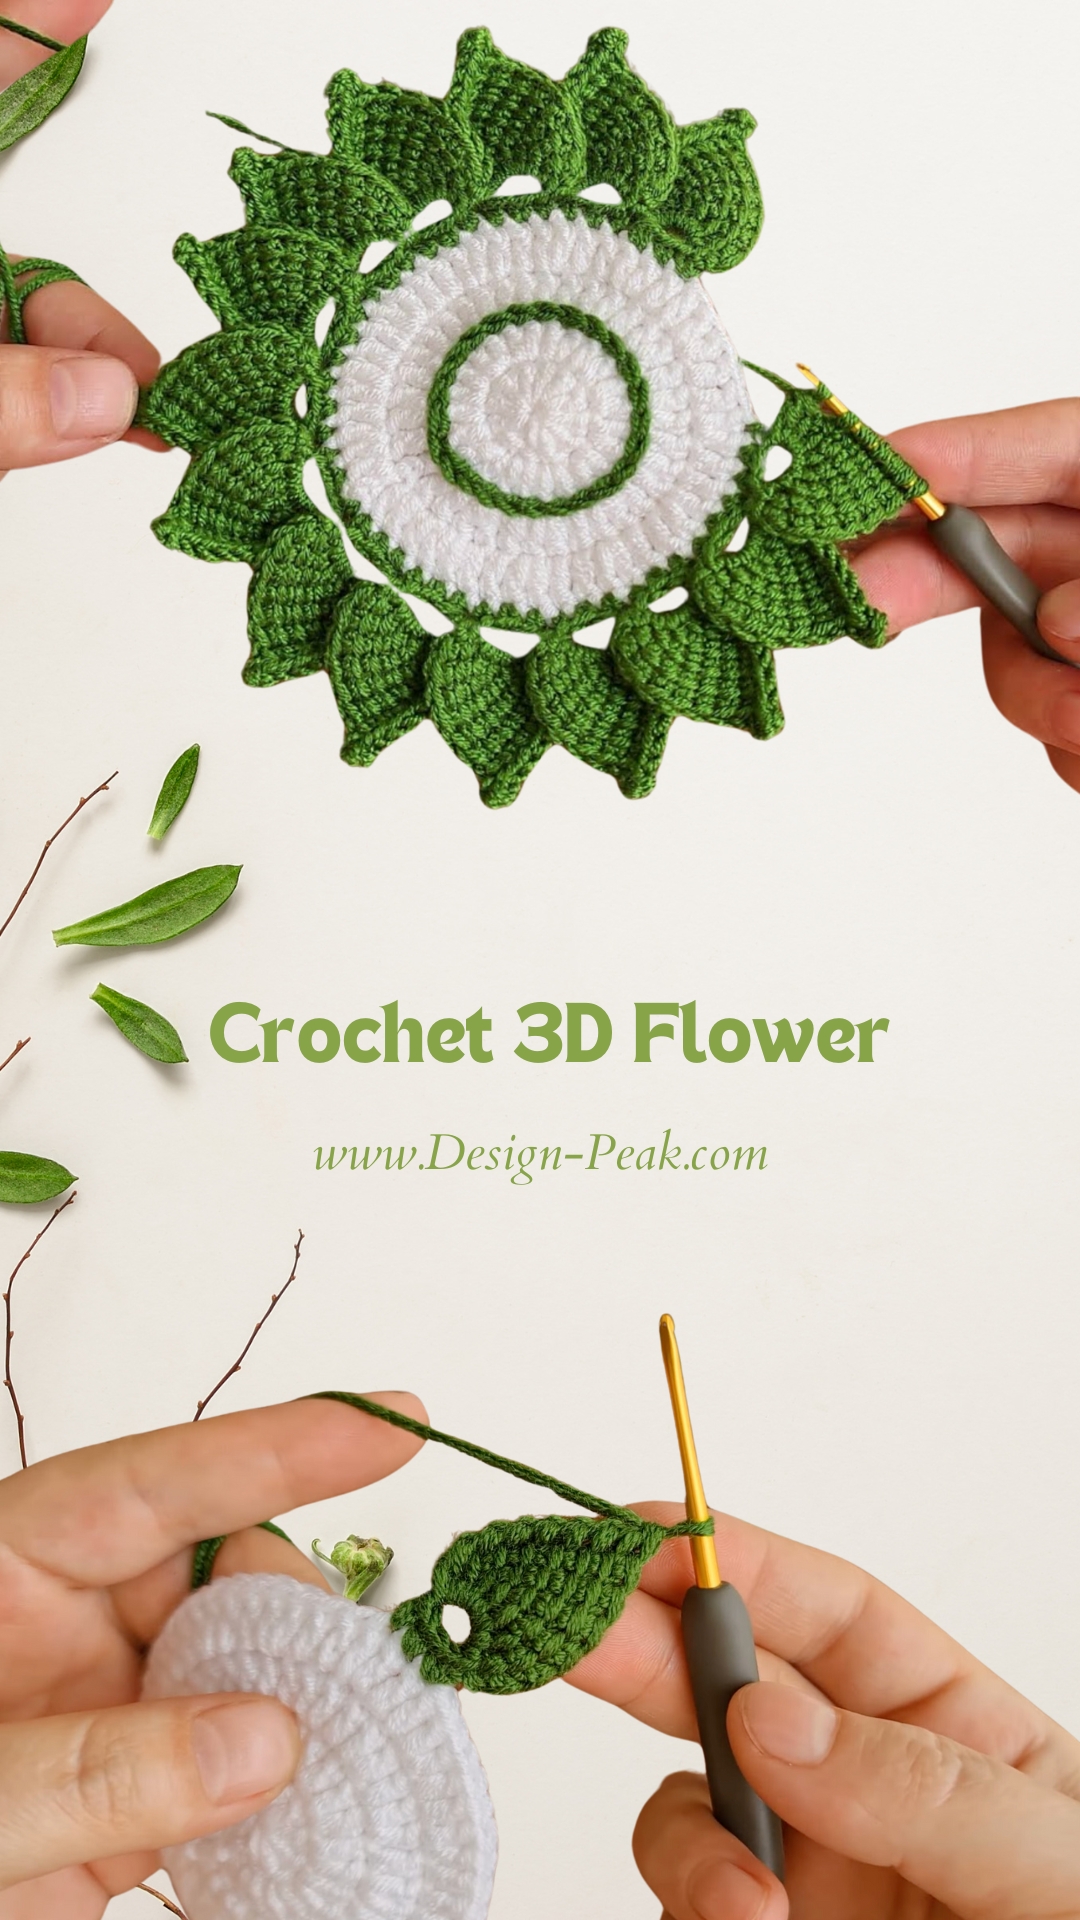 Crochet 3D Flower: A Journey of Creativity